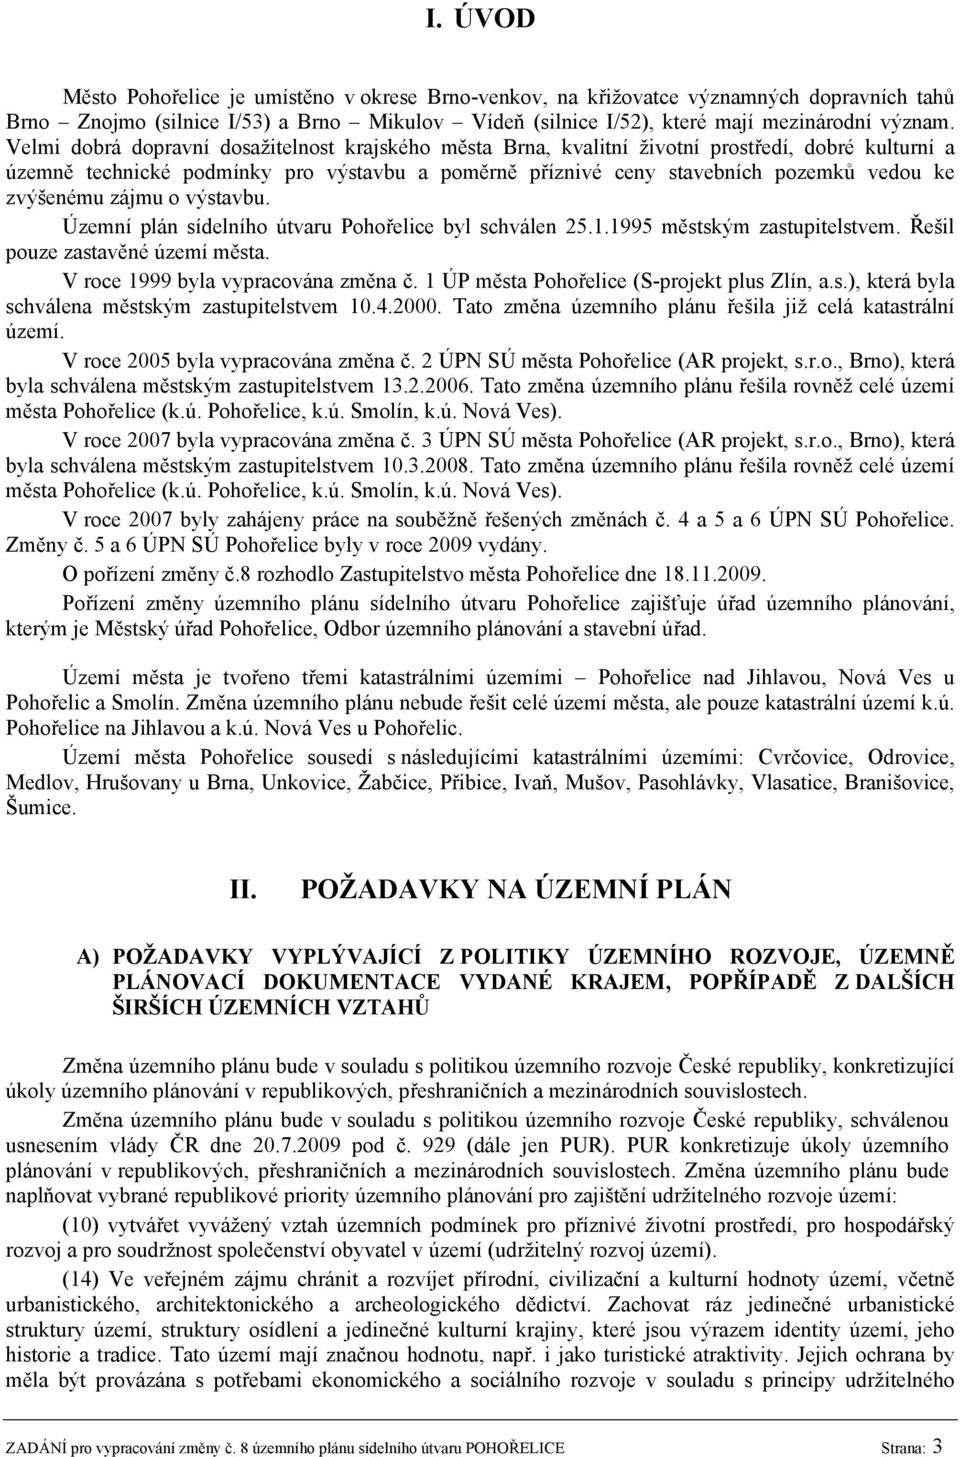 zvýšenému zájmu o výstavbu. Územní plán sídelního útvaru Pohořelice byl schválen 25.1.1995 městským zastupitelstvem. Řešil pouze zastavěné území města. V roce 1999 byla vypracována změna č.